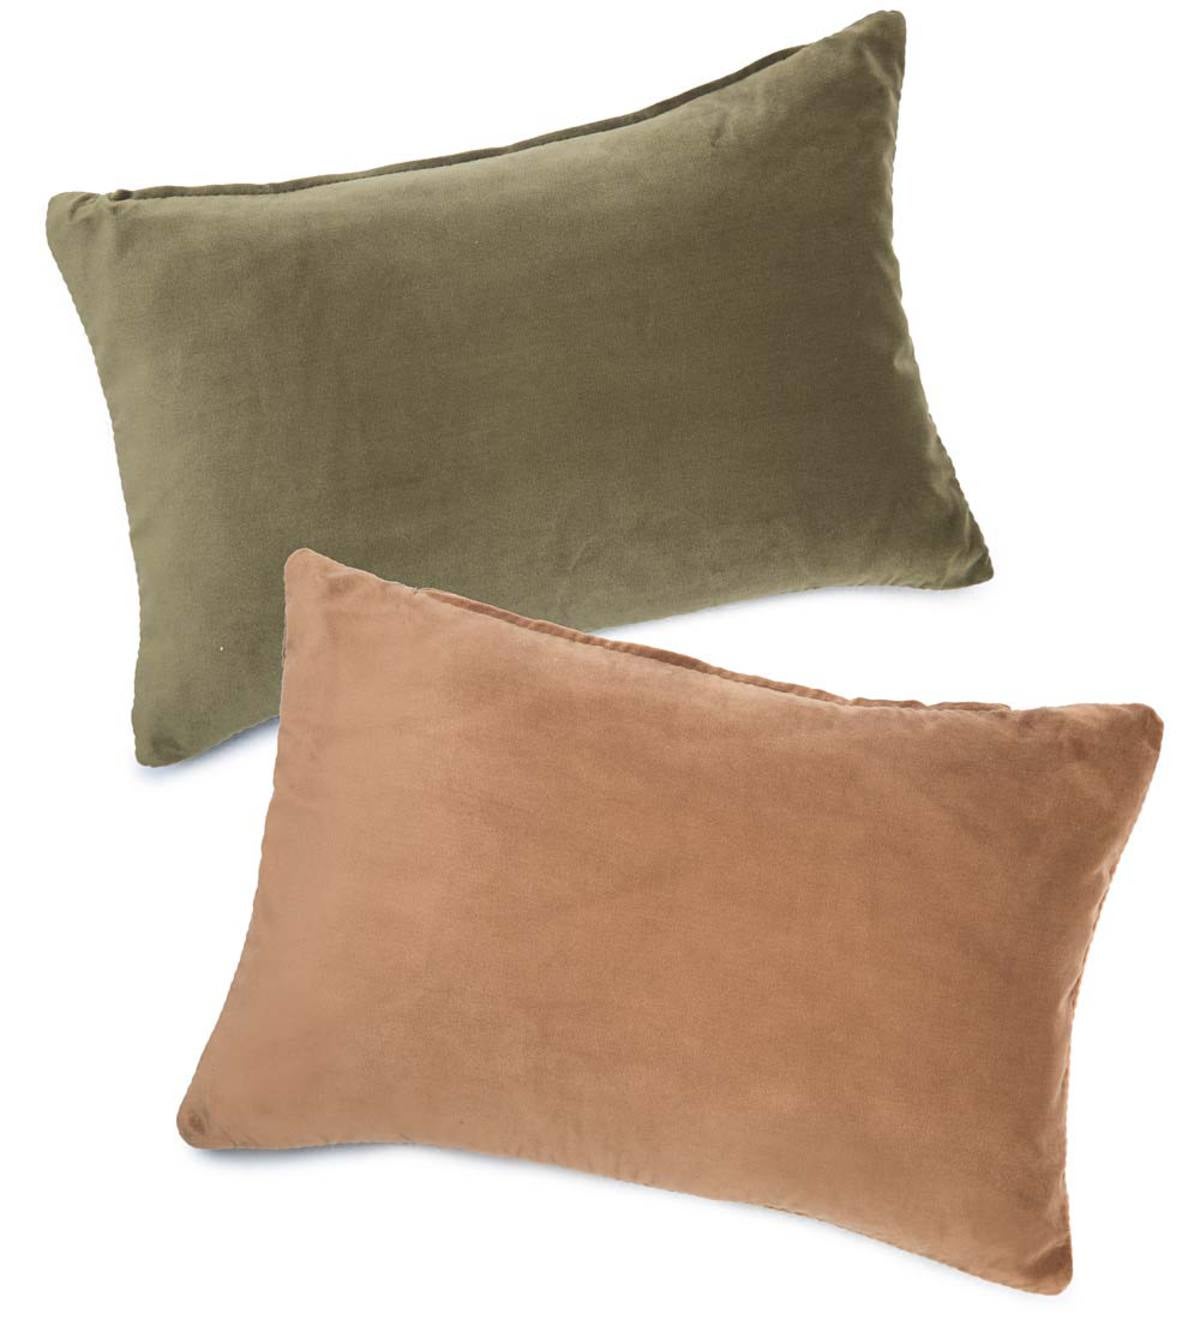 Somerset Lumbar Pillow